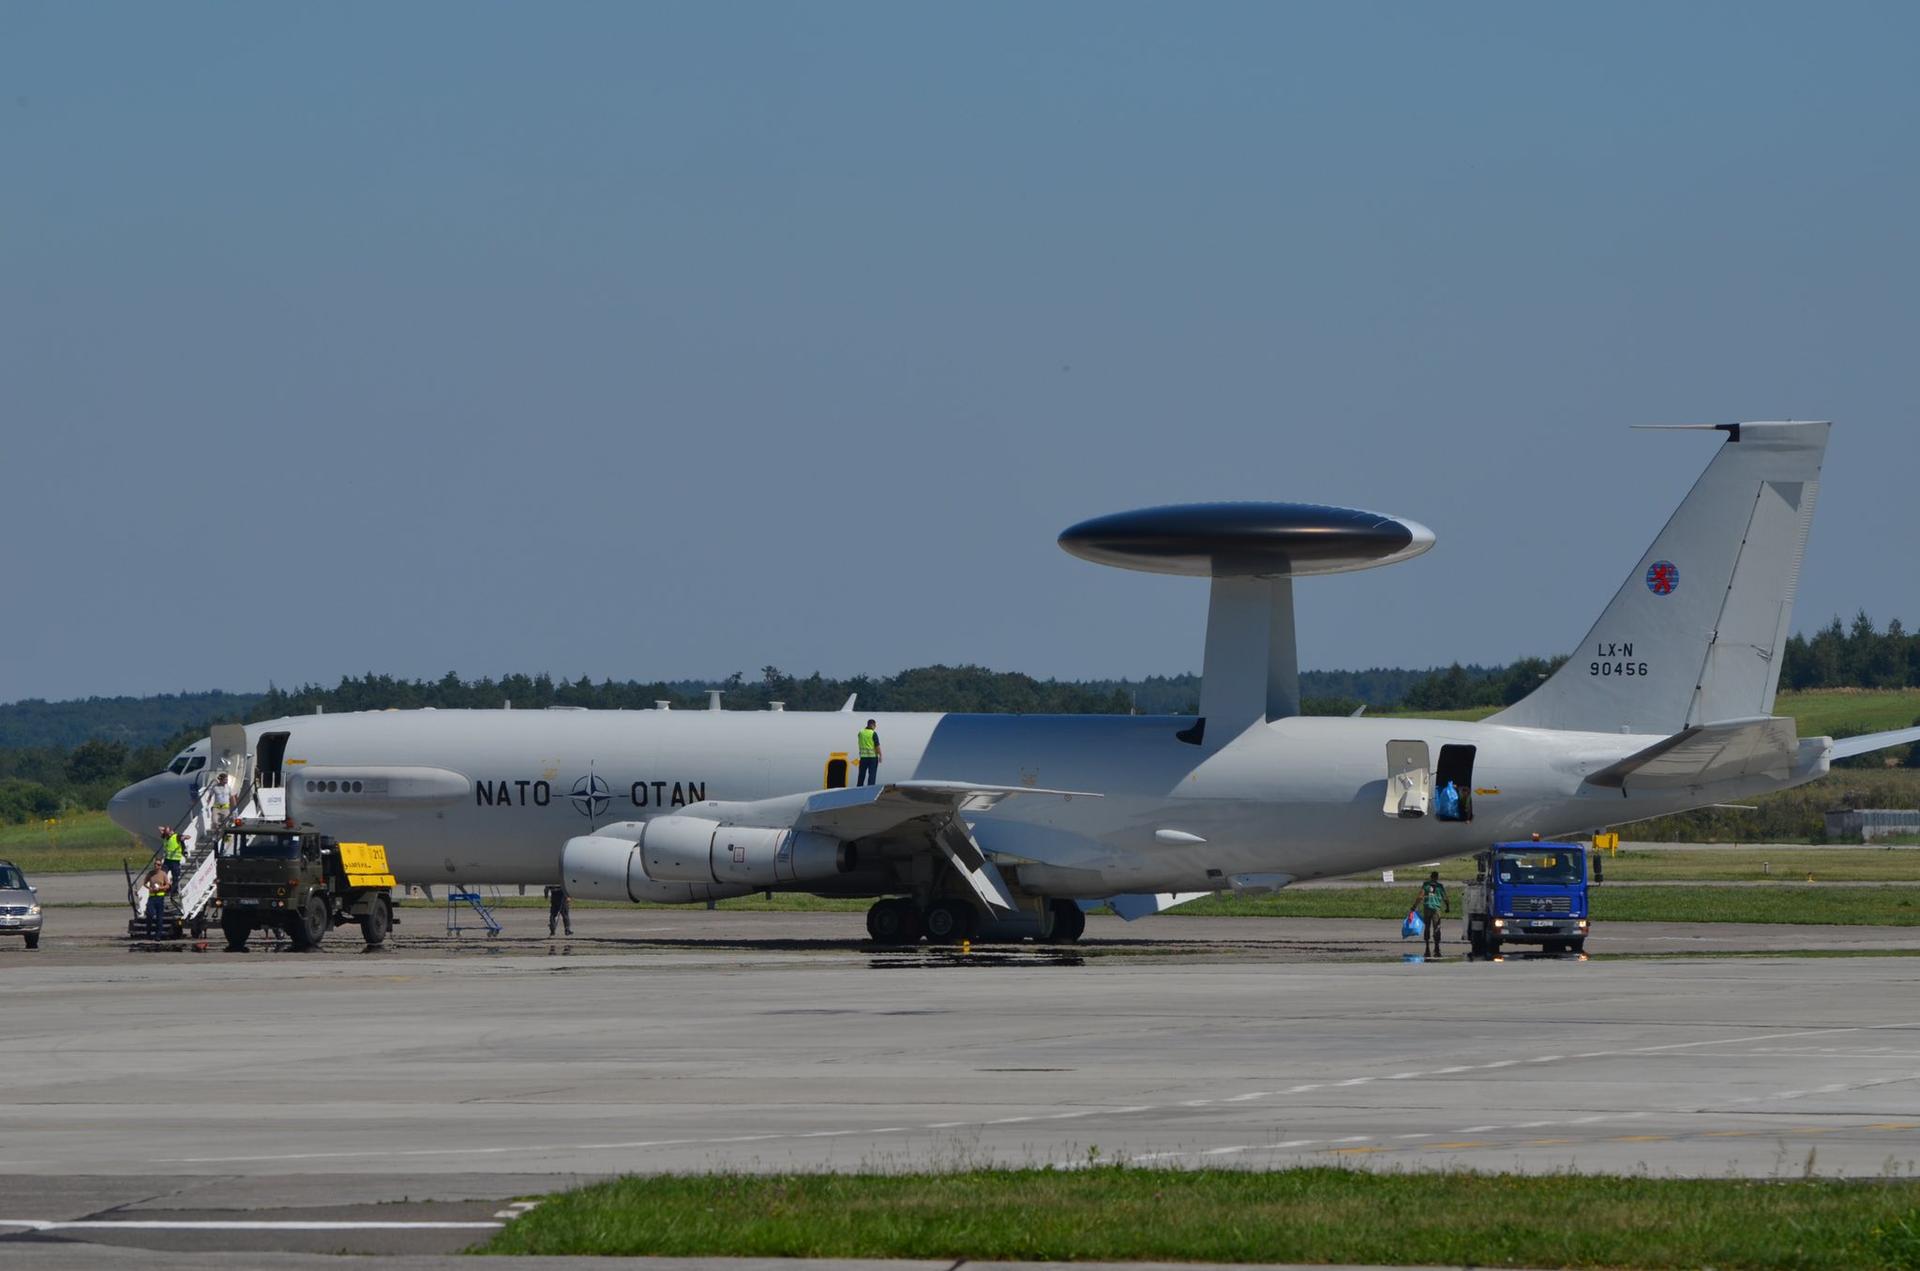 Samolot NATO AWACS nad Polską. Monitoruje przestrzeń w odległości 400 km